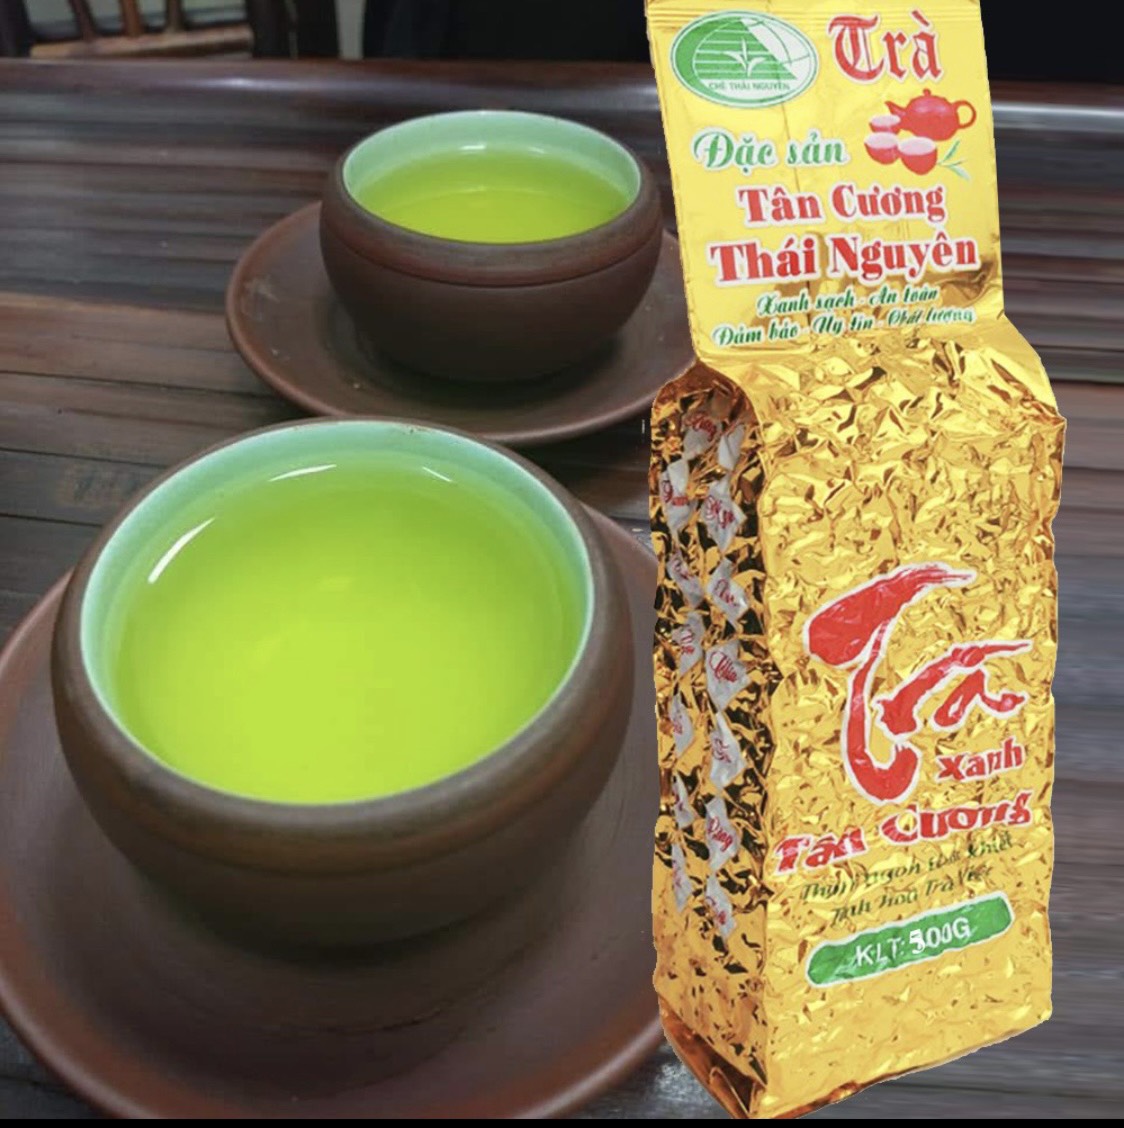 TRÀ THÁI NGUYÊN TÂN CƯƠNG Loại Cao Cấp hảo hạng,trà búp xanh chính hiệu